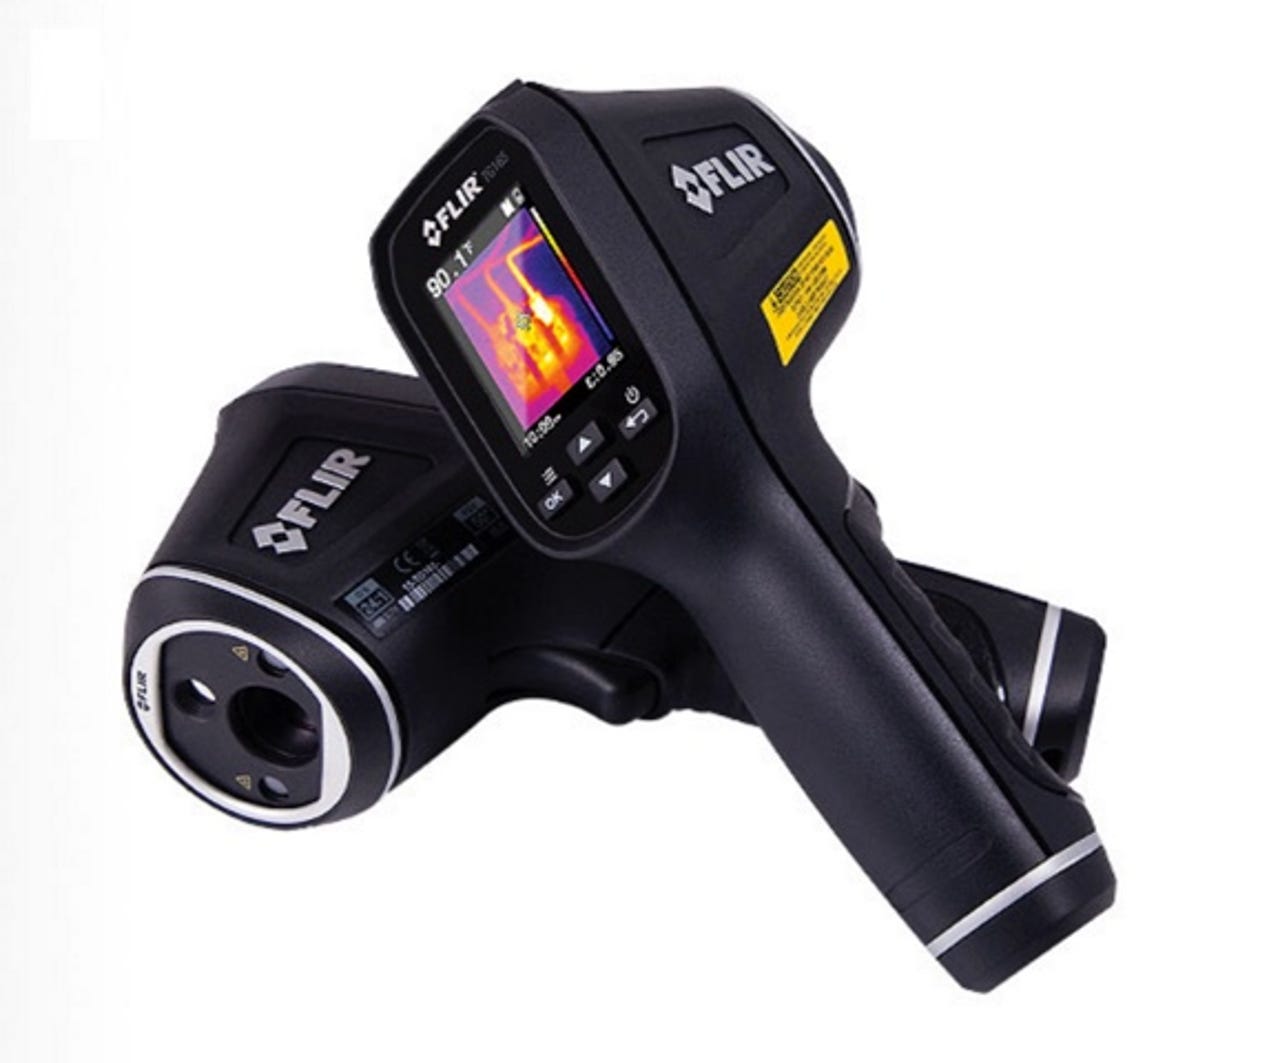 Flir TG165 thermal camera